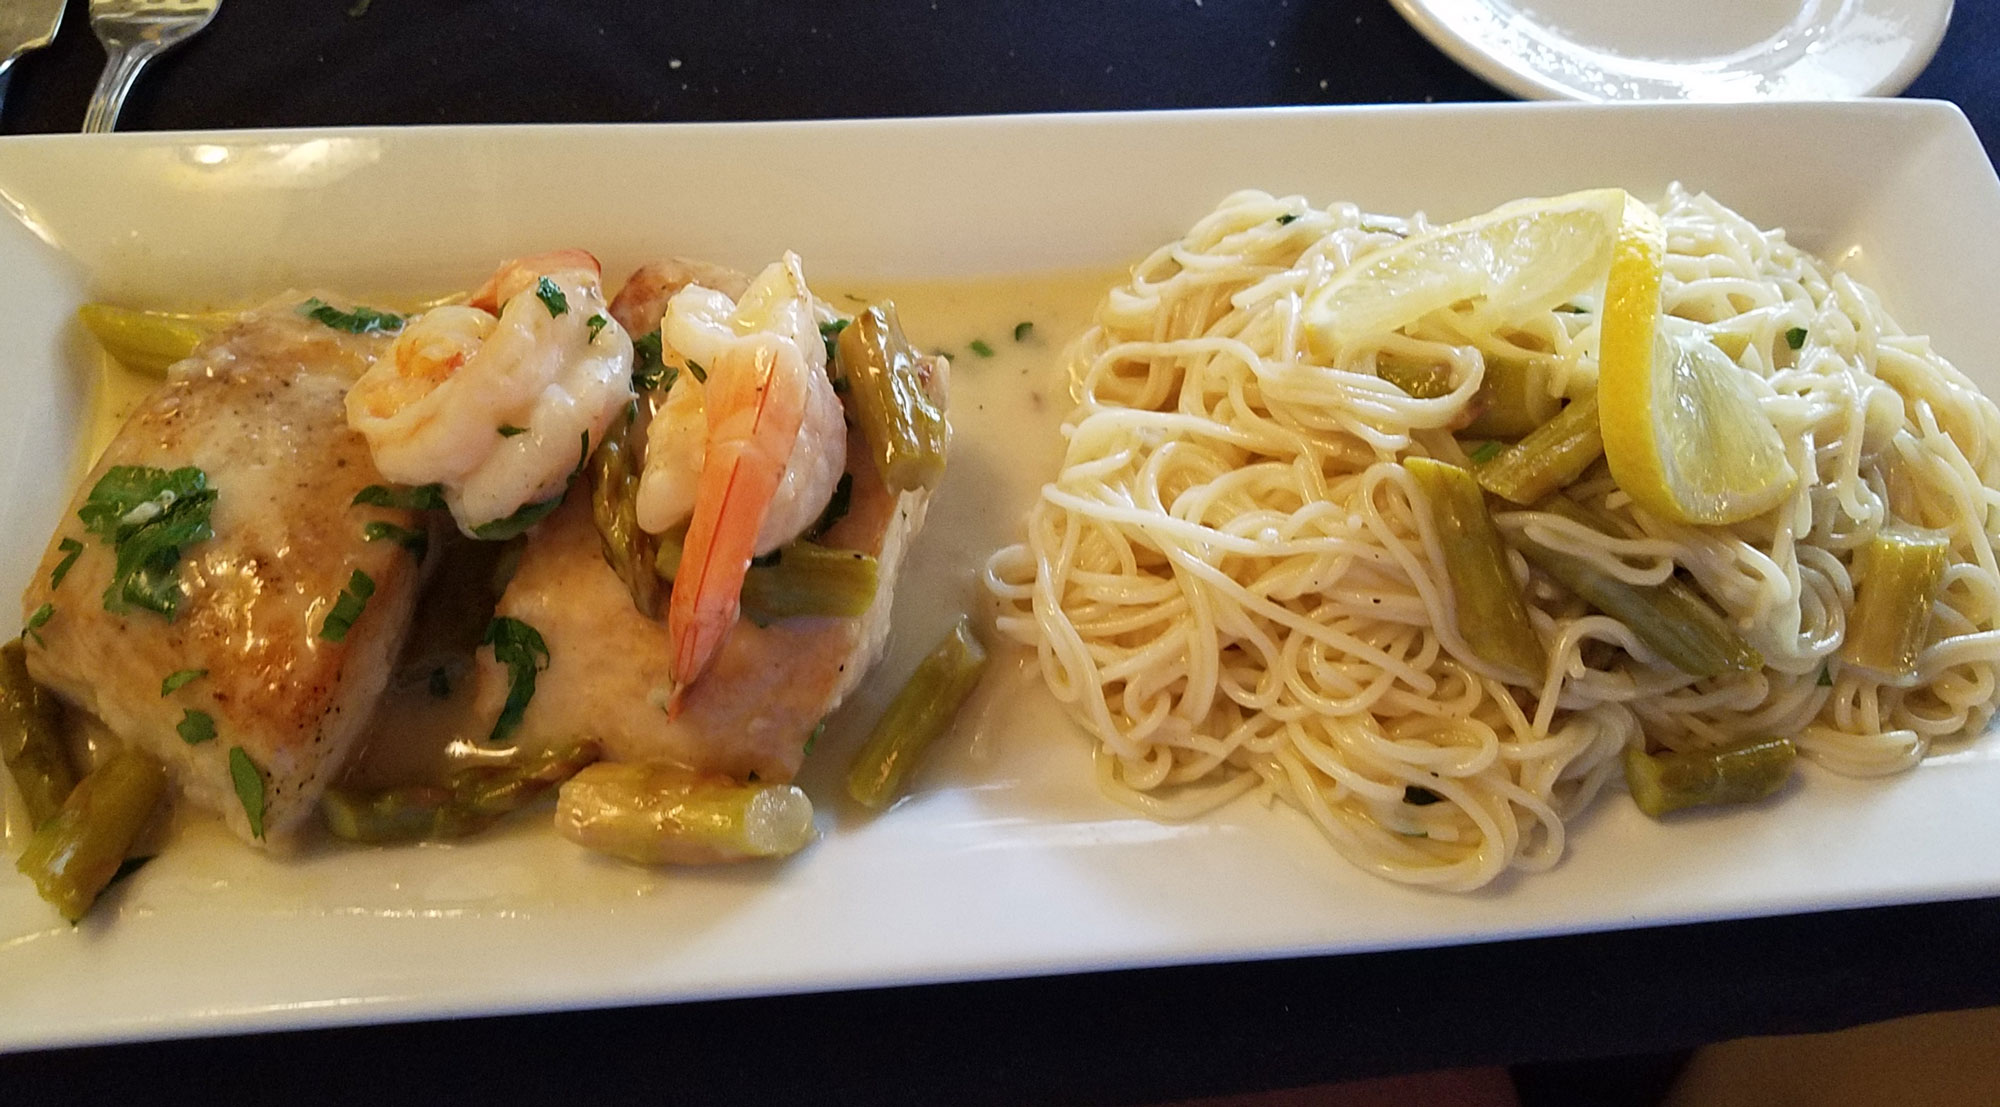 Mahi and Shrimp Special